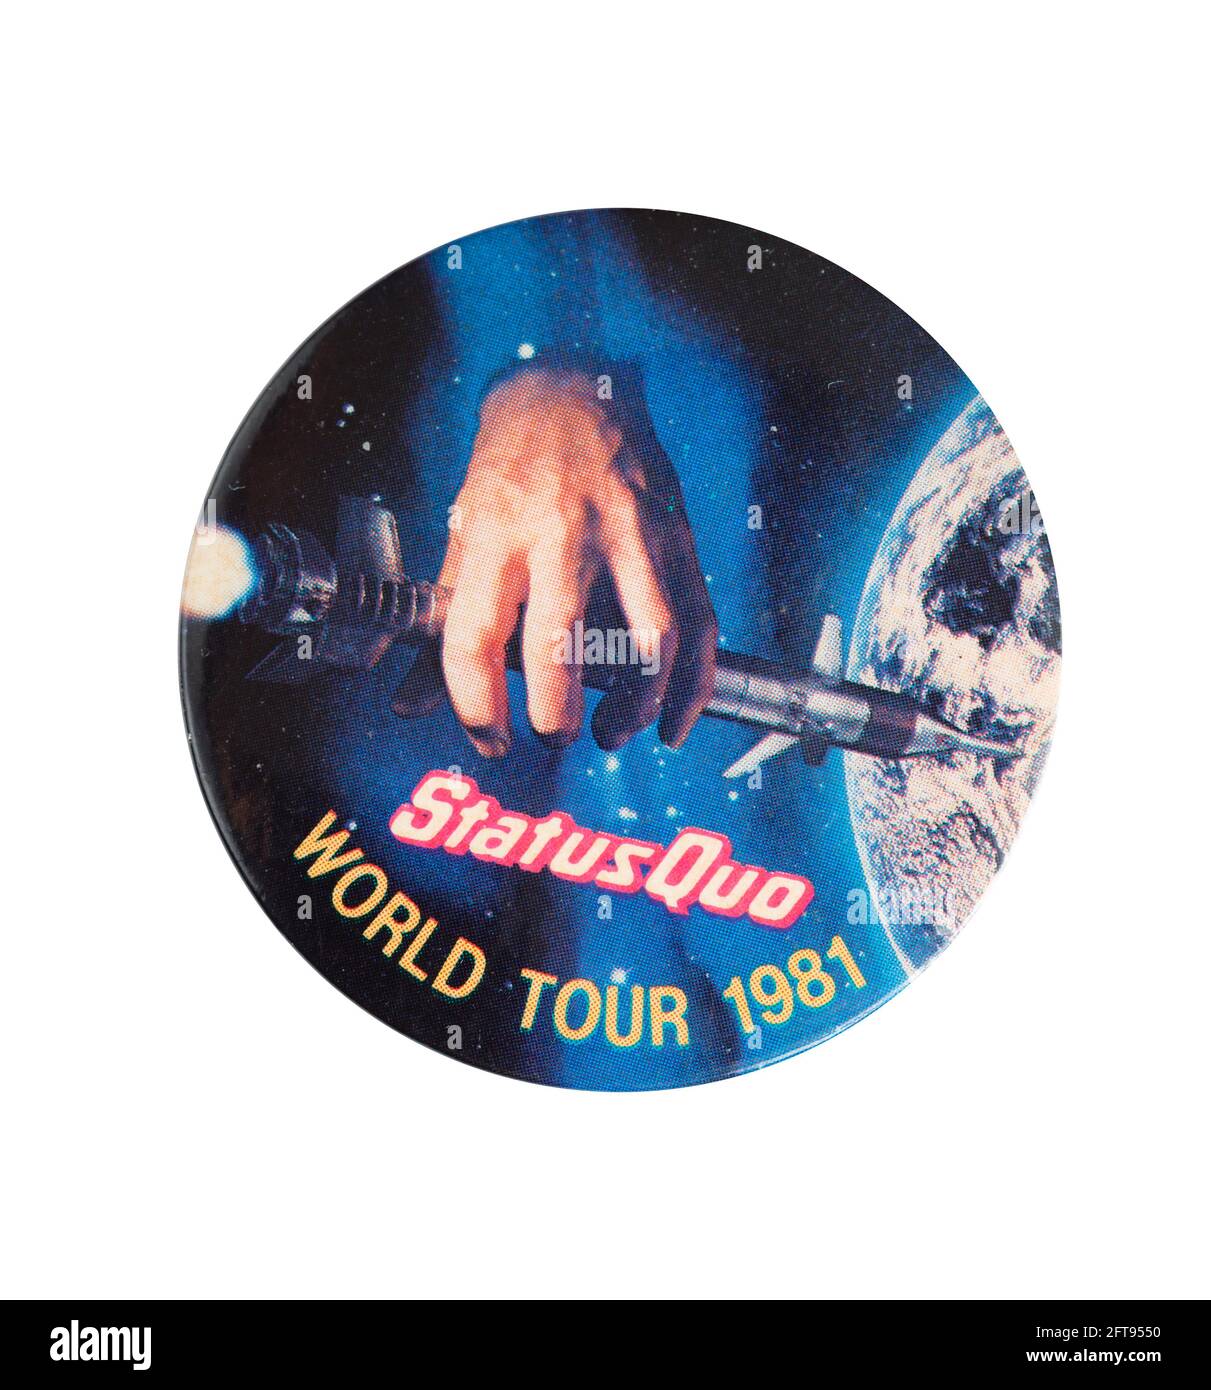 Status Quo World Tour 1981 Tour memento pin badge. Stock Photo